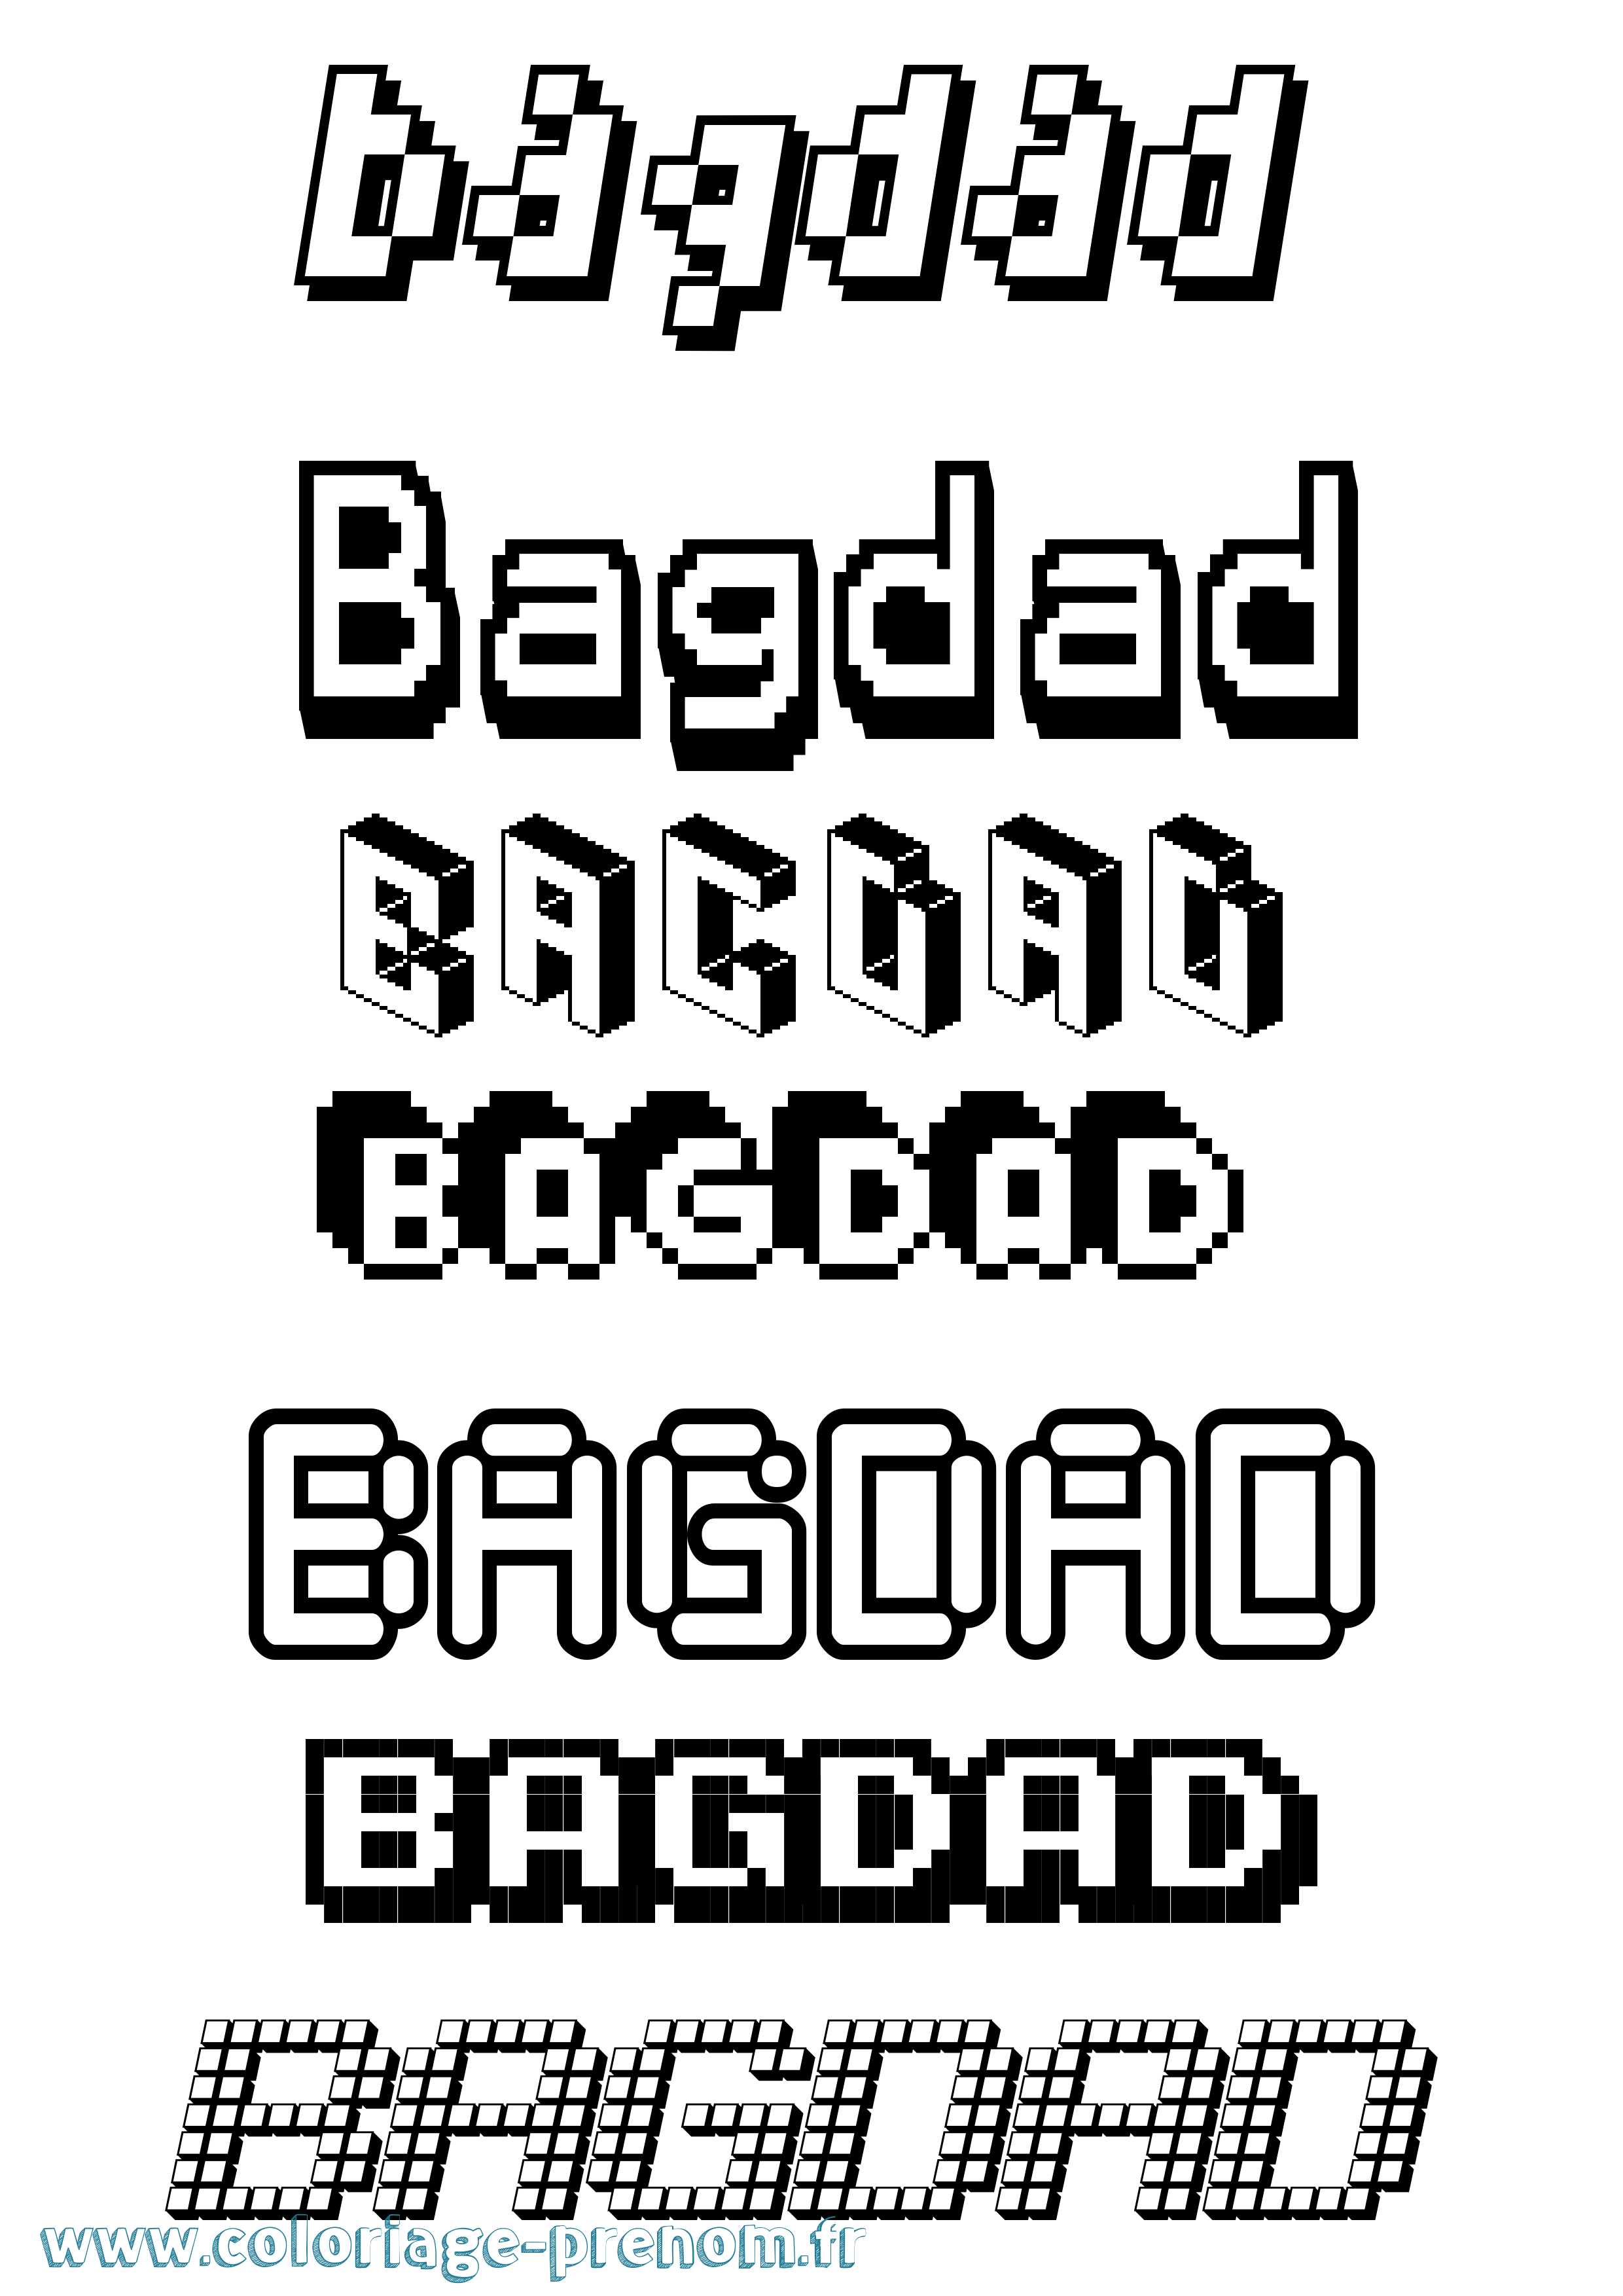 Coloriage prénom Bagdad Pixel